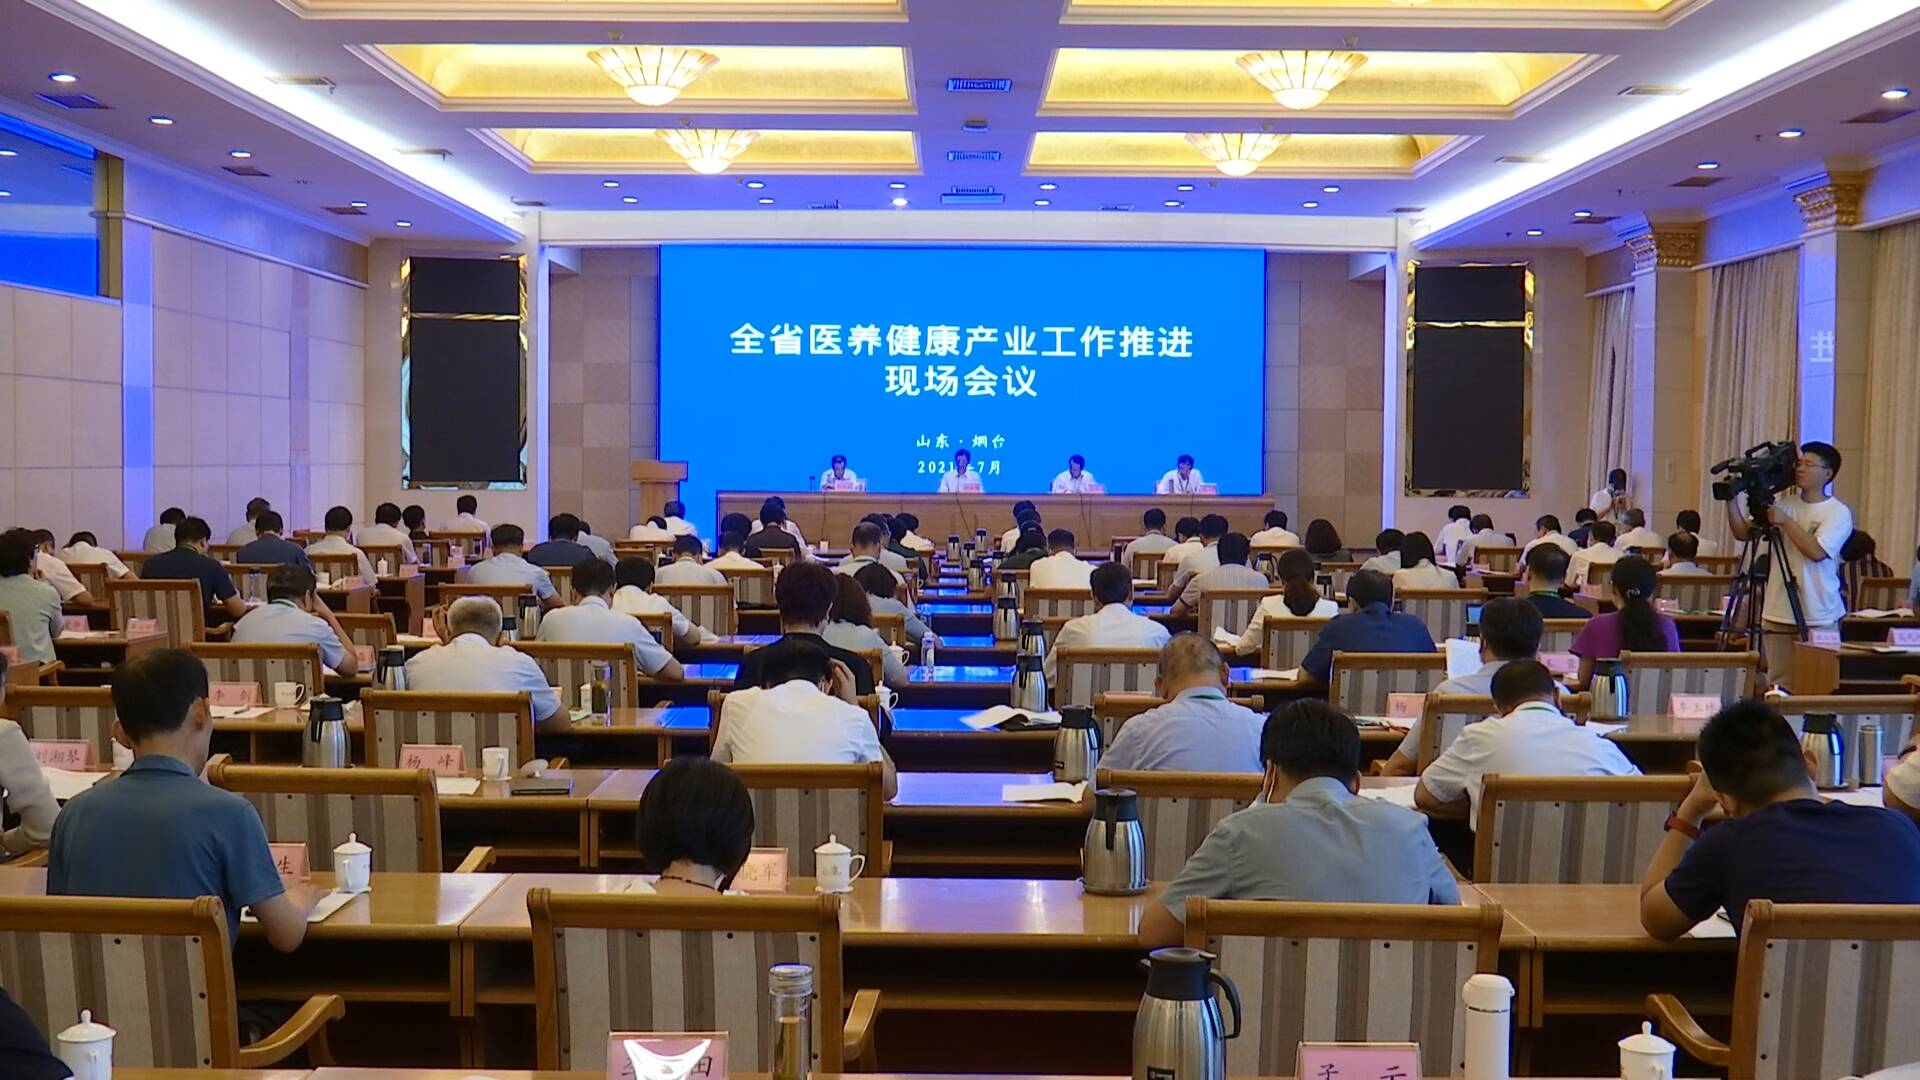 山东省医养健康产业工作推进现场会议在烟台召开